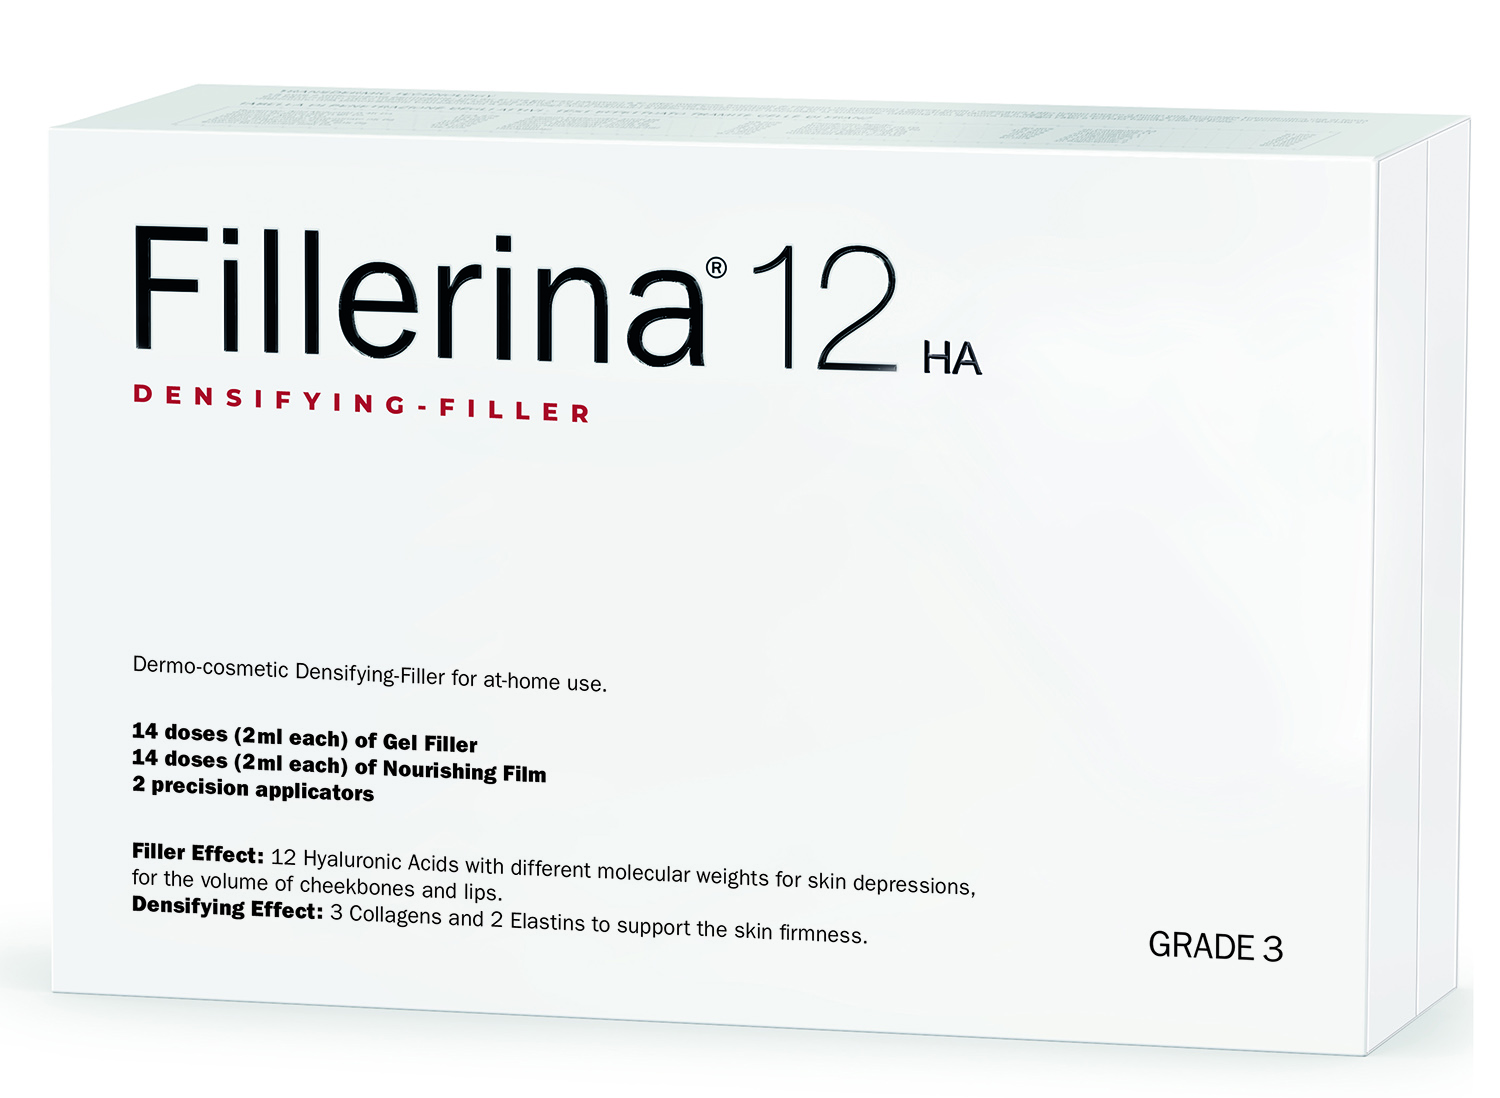 fillerina 12 ha densifying filler дермо косметический филлер с укрепляющим эффектом уровень 5 30 мл 30 мл Fillerina Дермо-косметический набор с укрепляющим эффектом Intensive уровень 3, 2 флакона х 30 мл (Fillerina, 12 HA Densifying-Filler)